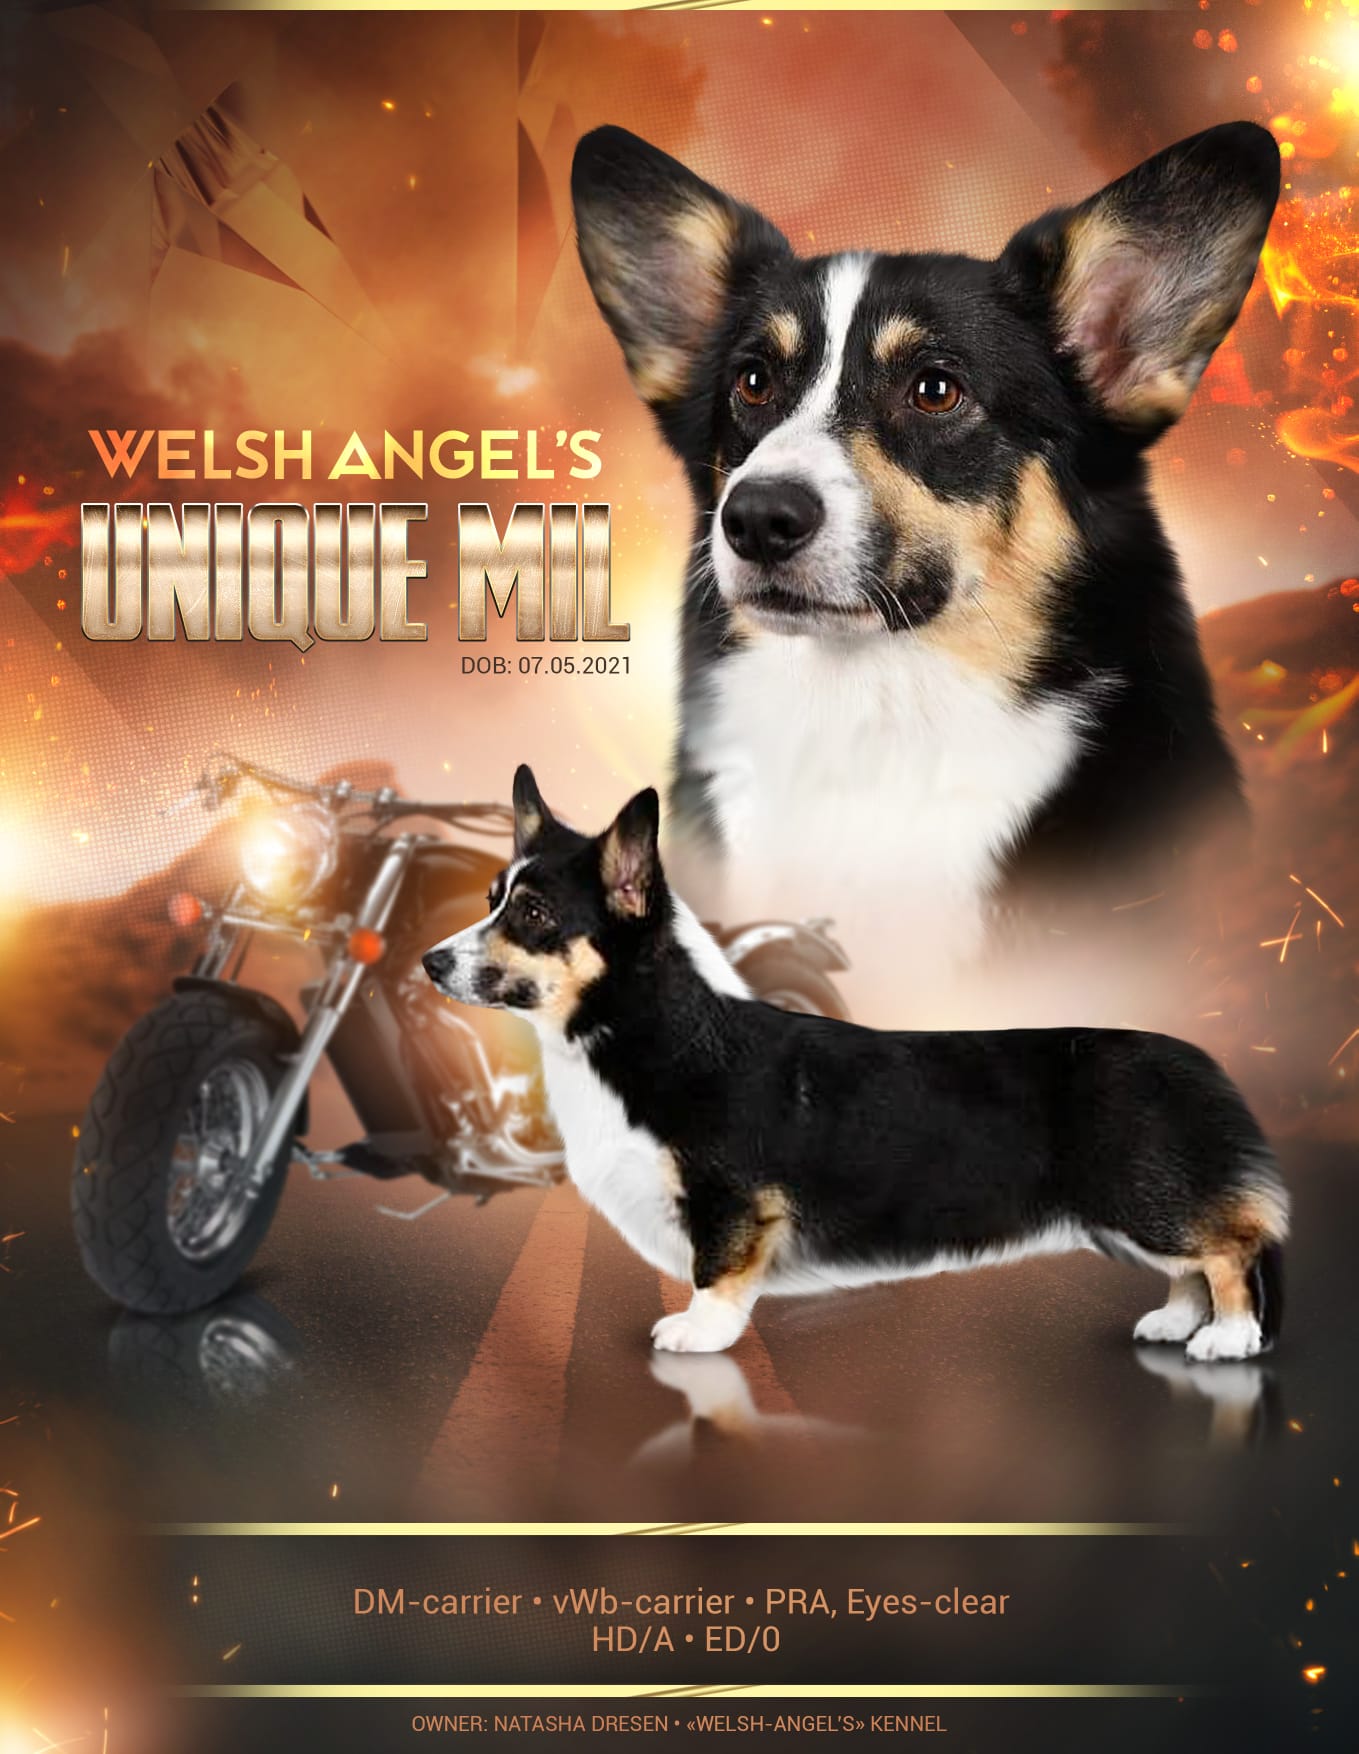 Welsh-angel’s unique mil